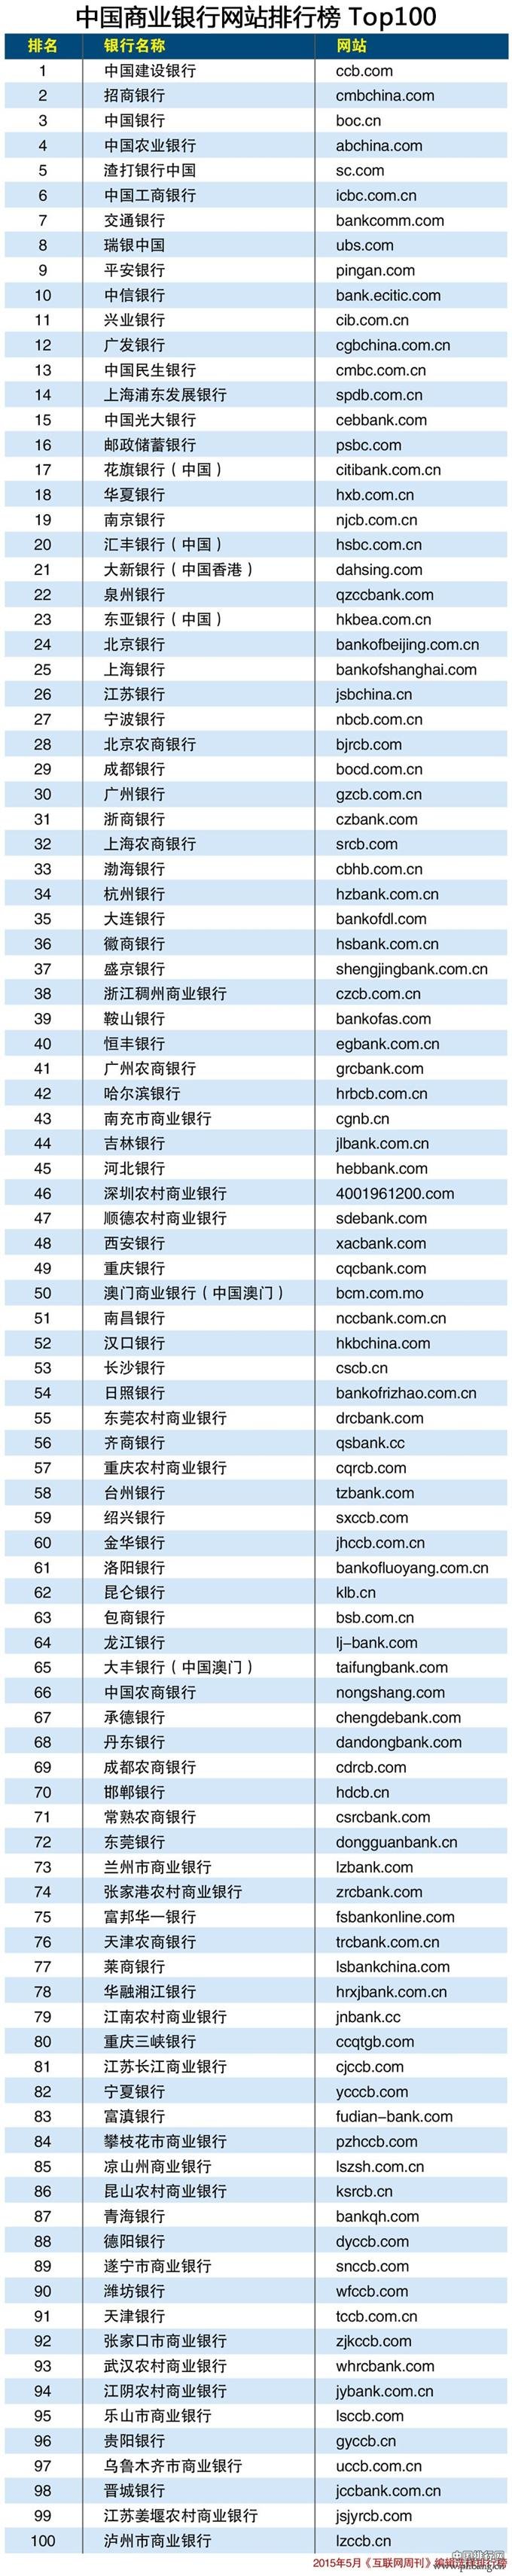 2015中国商业银行网站排行榜TOP100